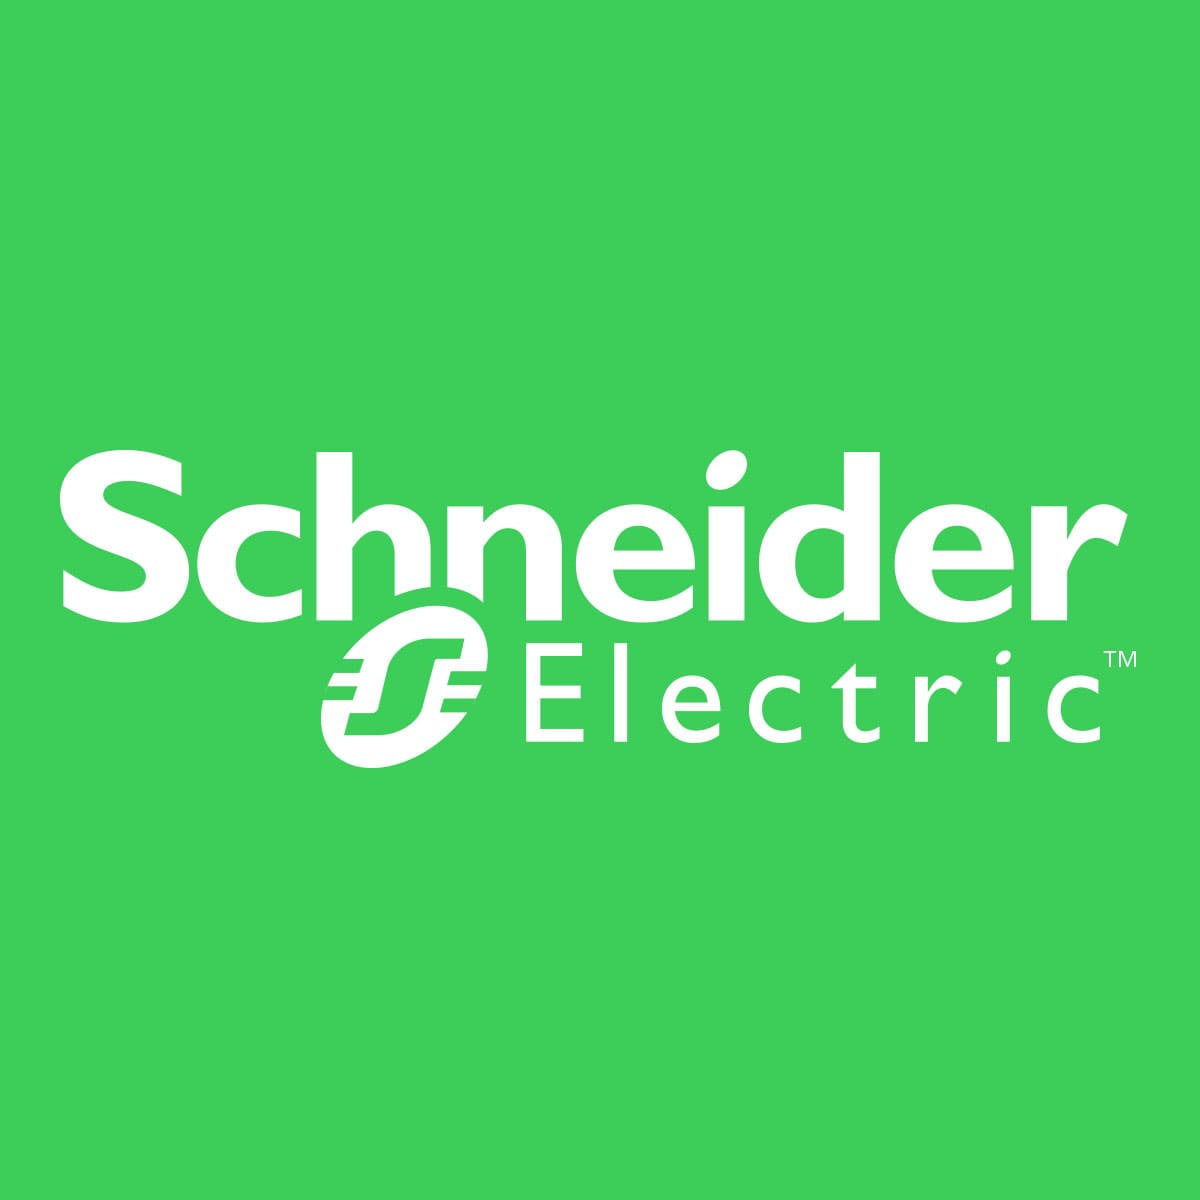 Schneider Electric vendor logo